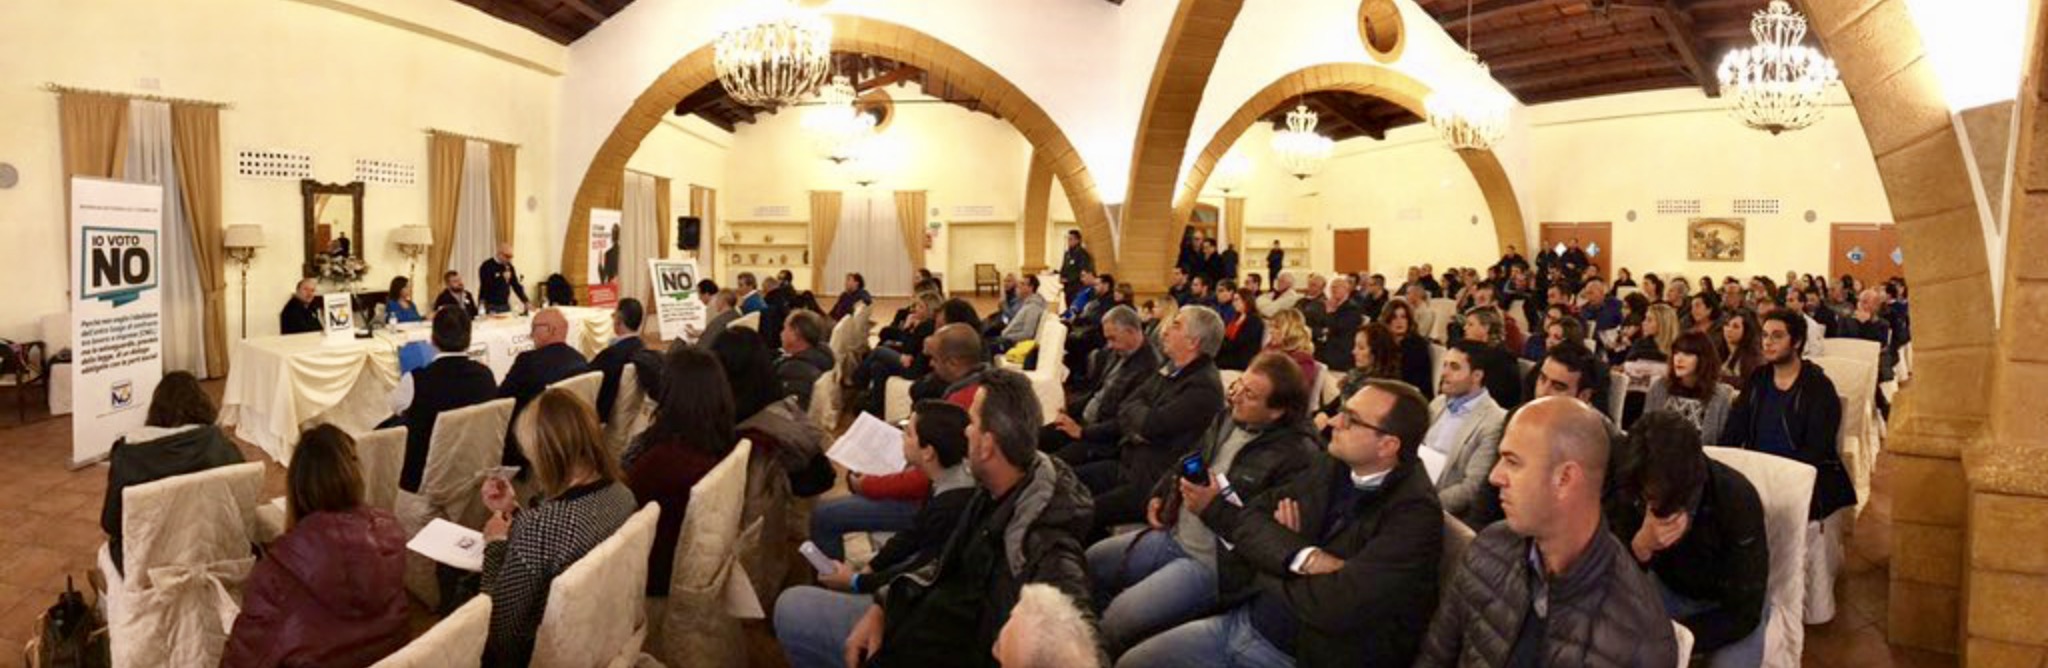 Grande mobilitazione del nostro Sindacato in Sicilia dove il NO è al 63%